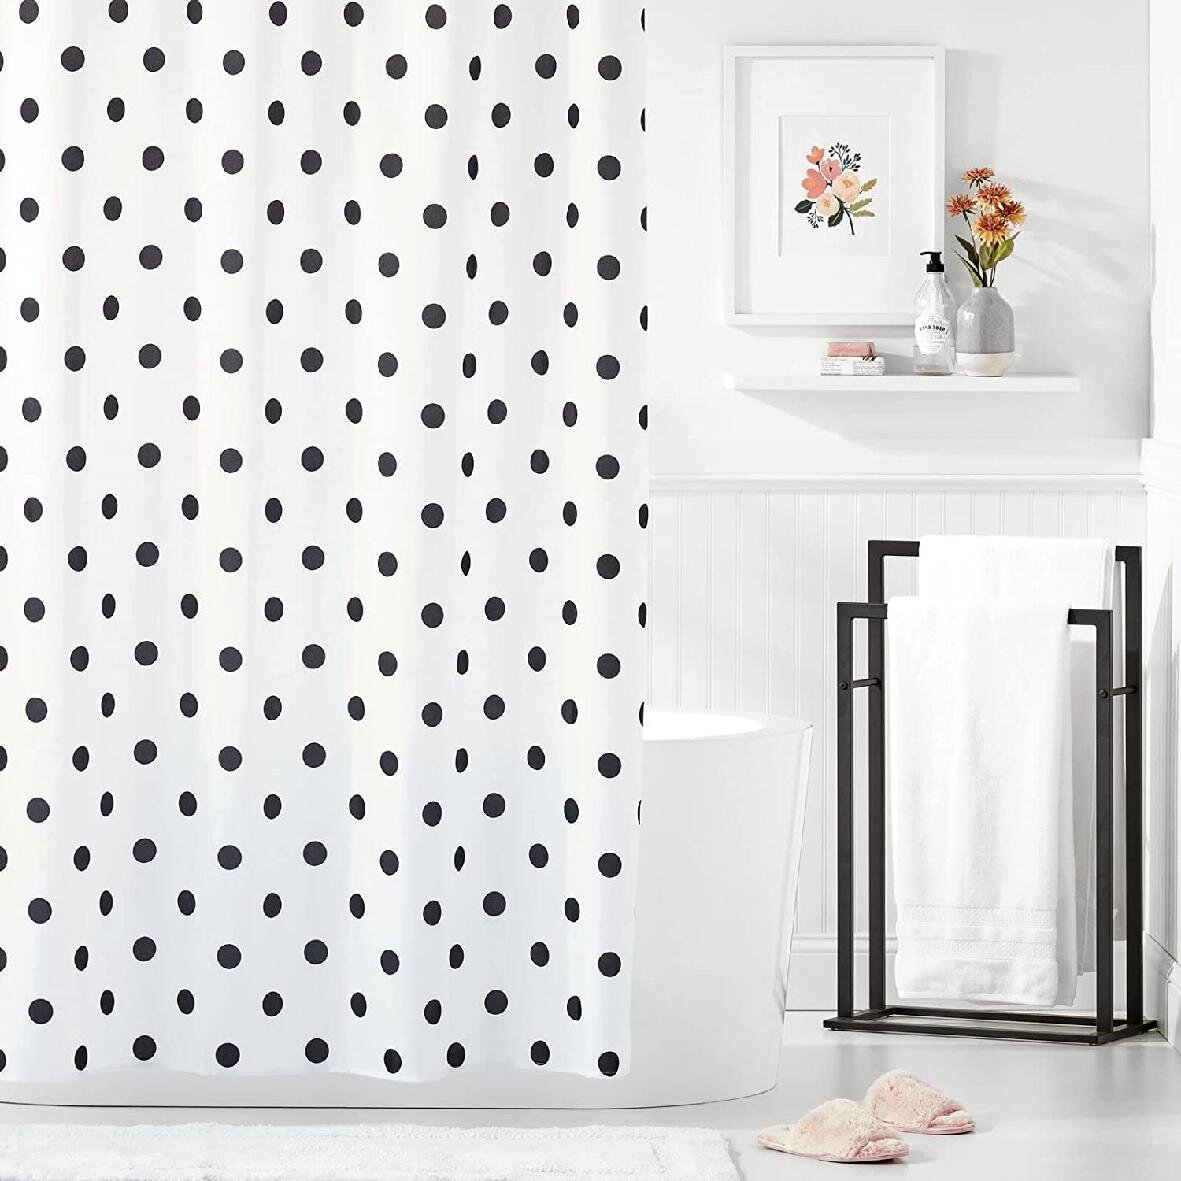 White & Grey Polka Dot PEVA Shower Curtain Brand New 